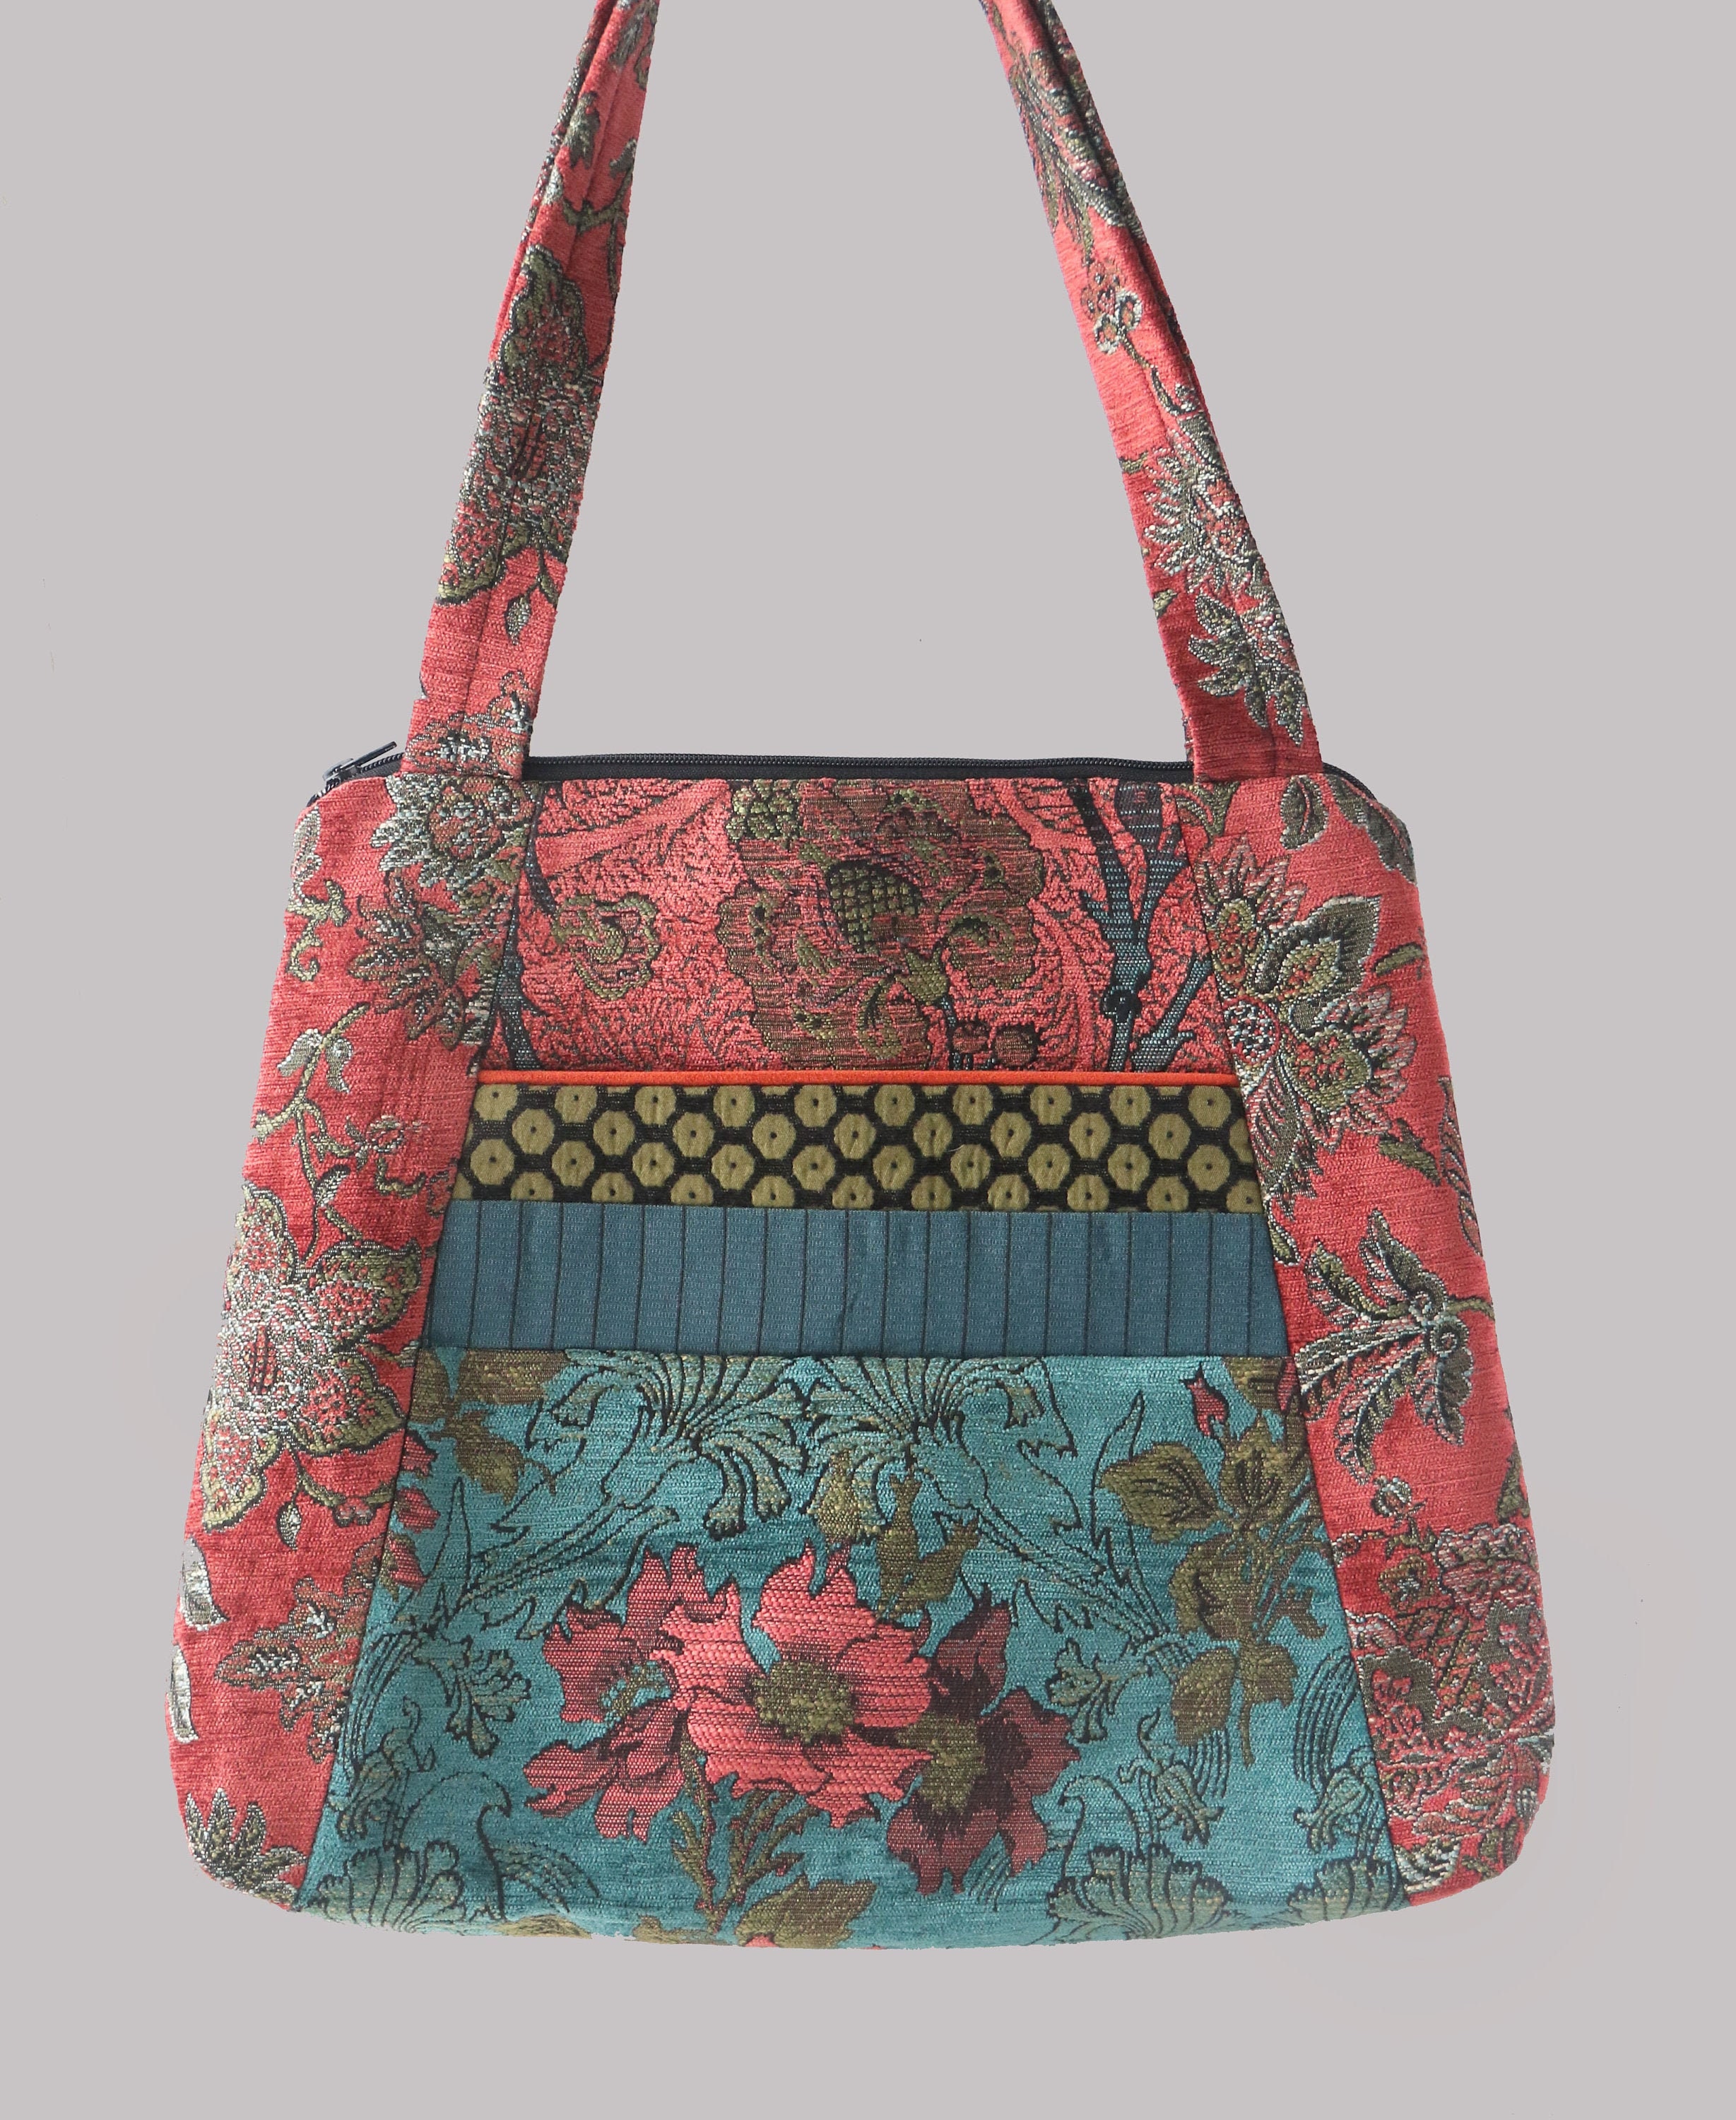 Lovely Tapestry Crochet Bag You Should Make - CrochetBeja